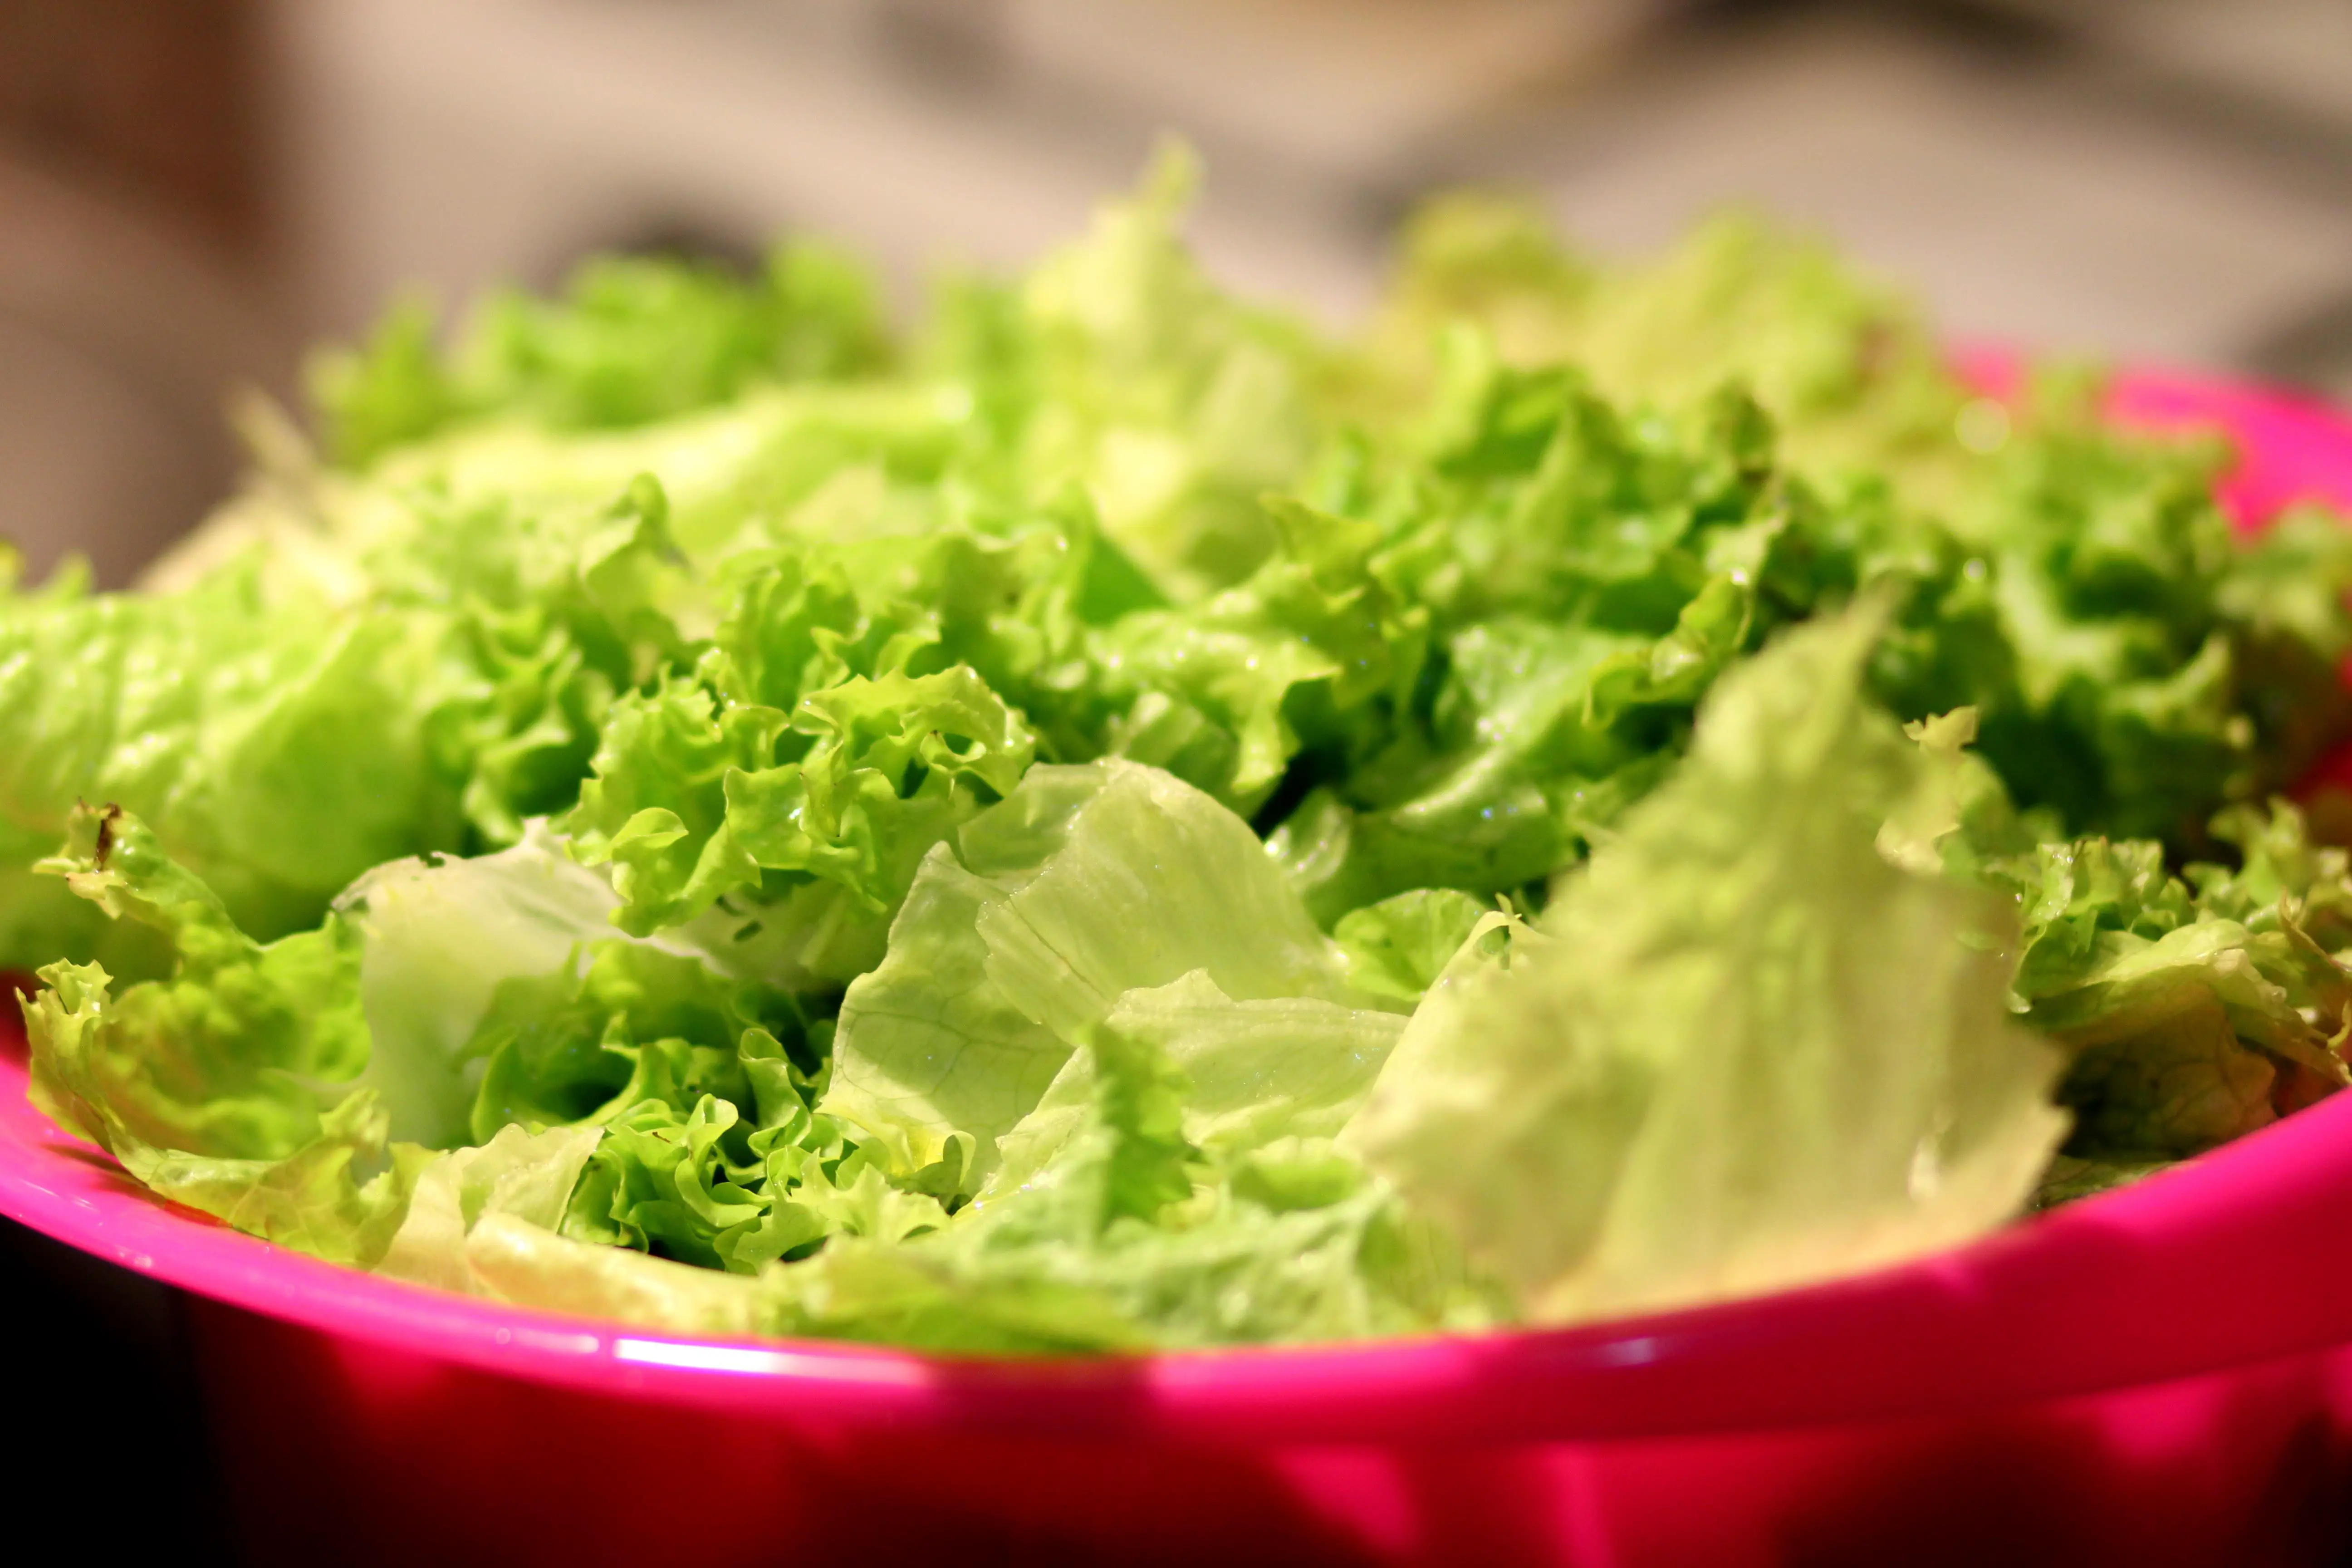 food, salad, lettuce